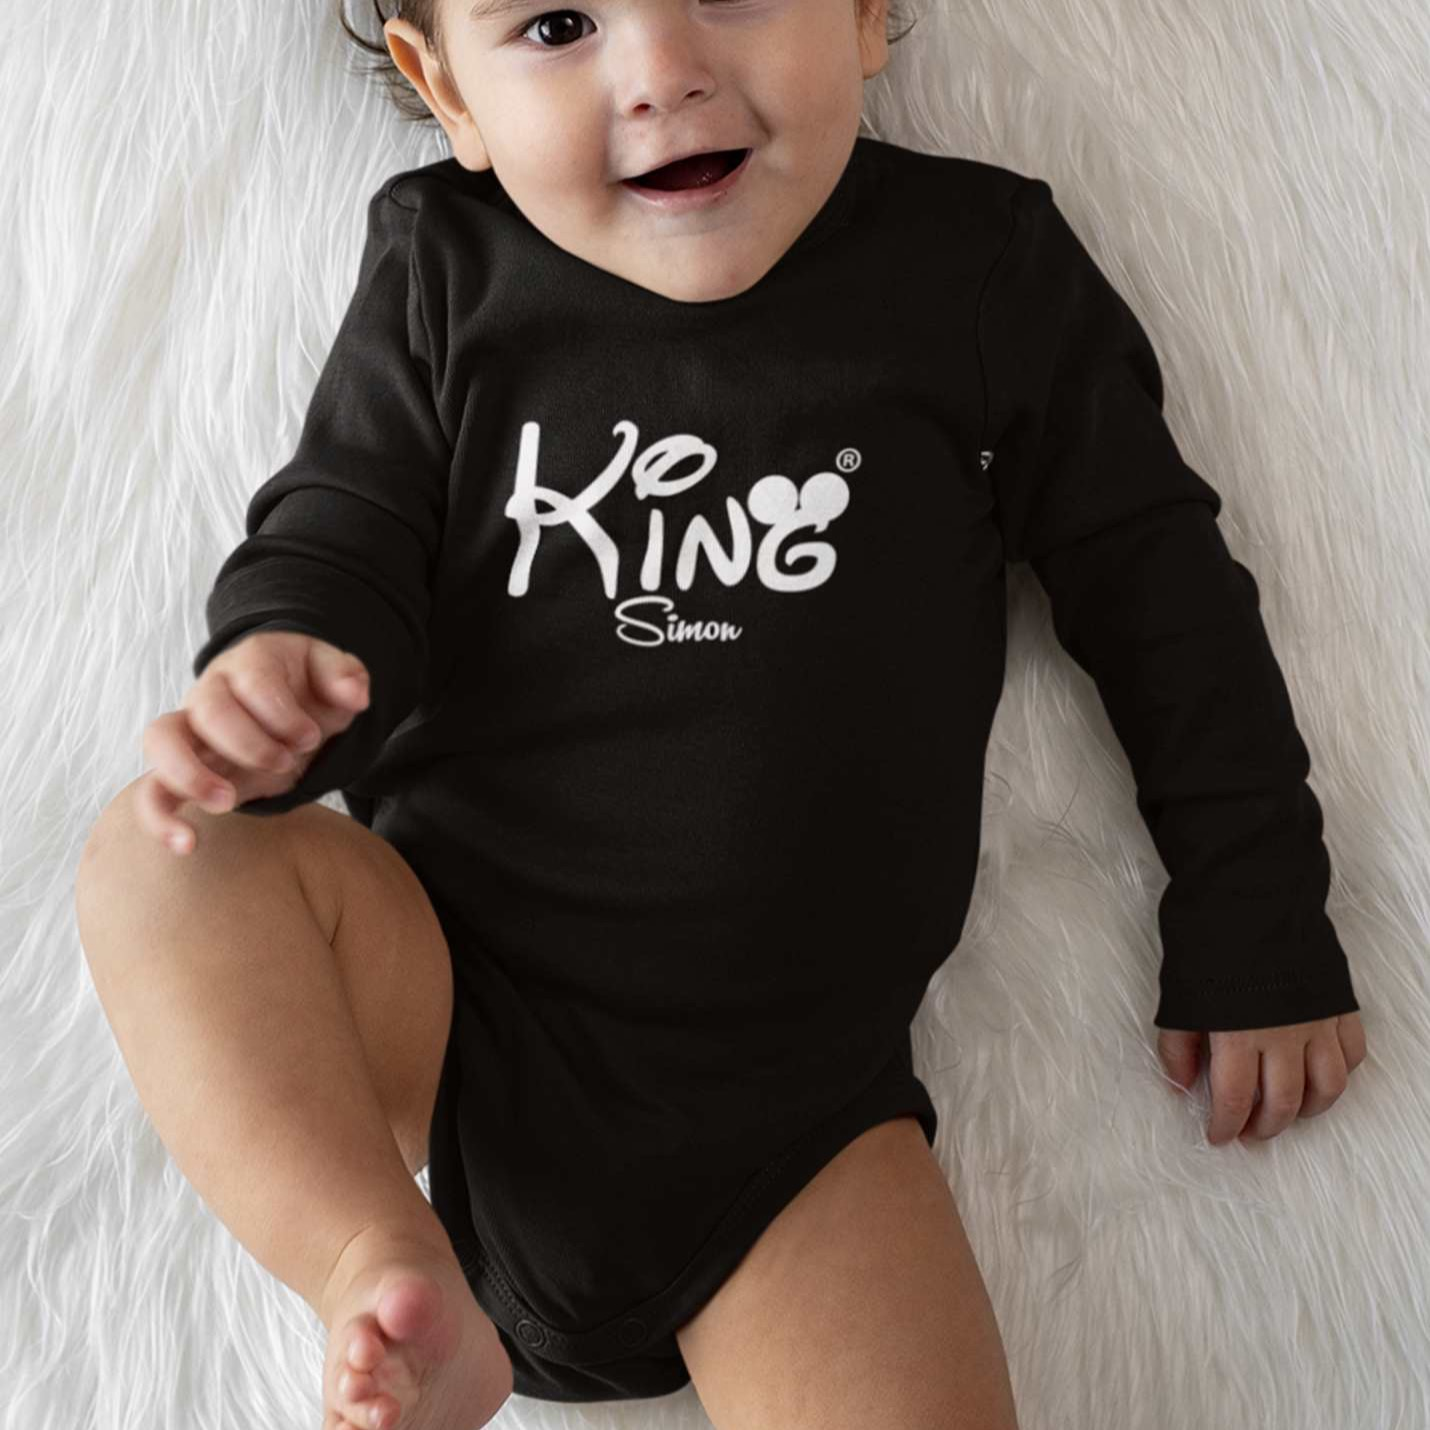 baby body schwarz Strampler mit namen king geschenkidee babyshower